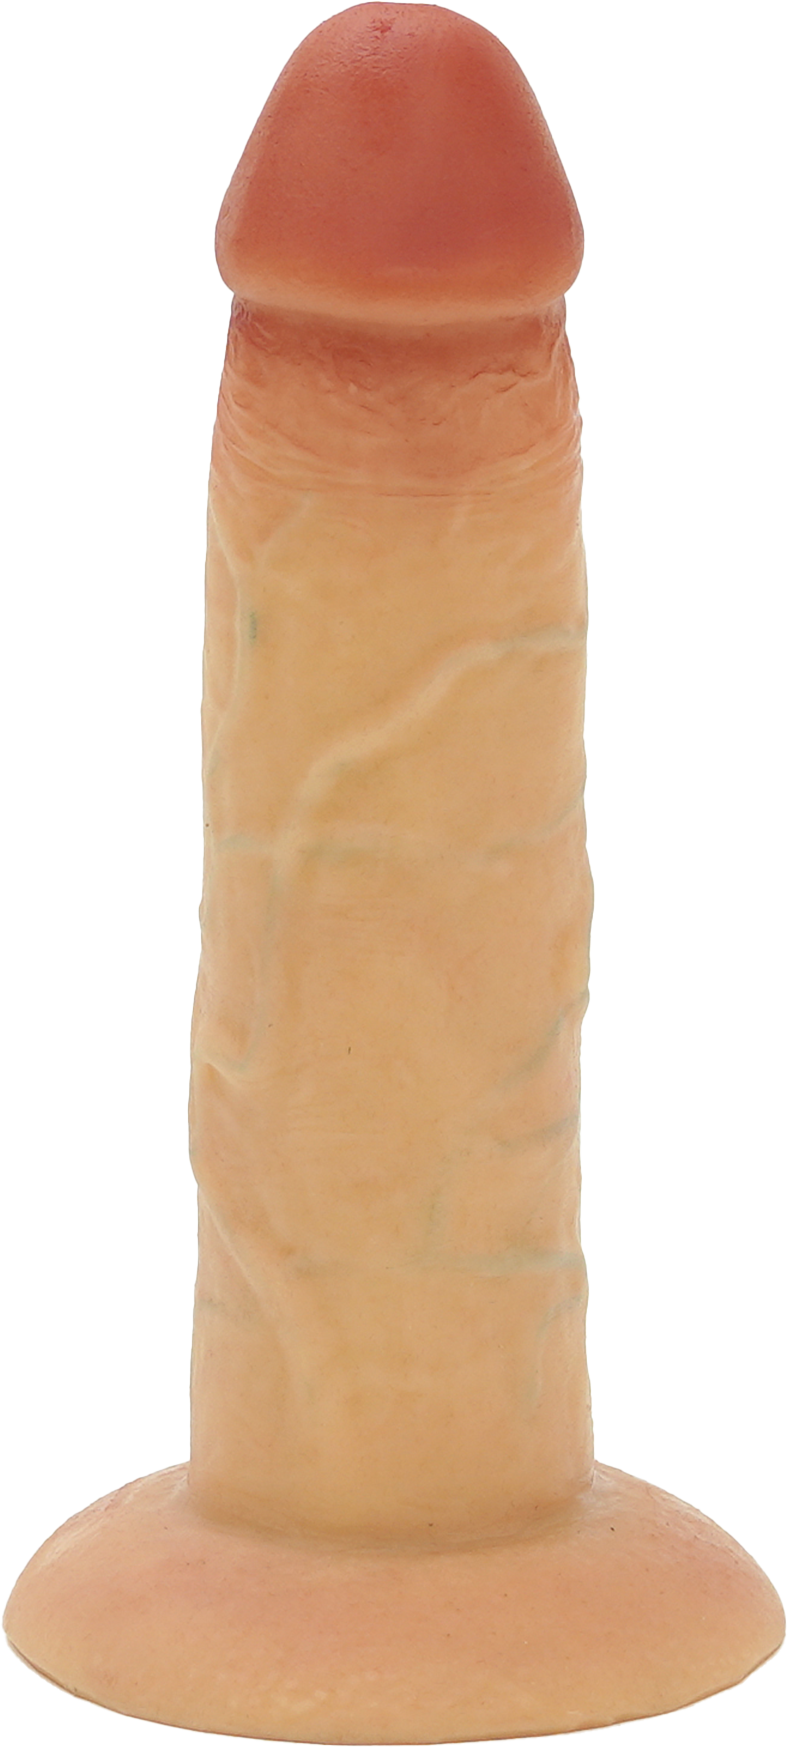 Sliding Skin Dildo - realistischer Dildo aus Silikon 17,5cm